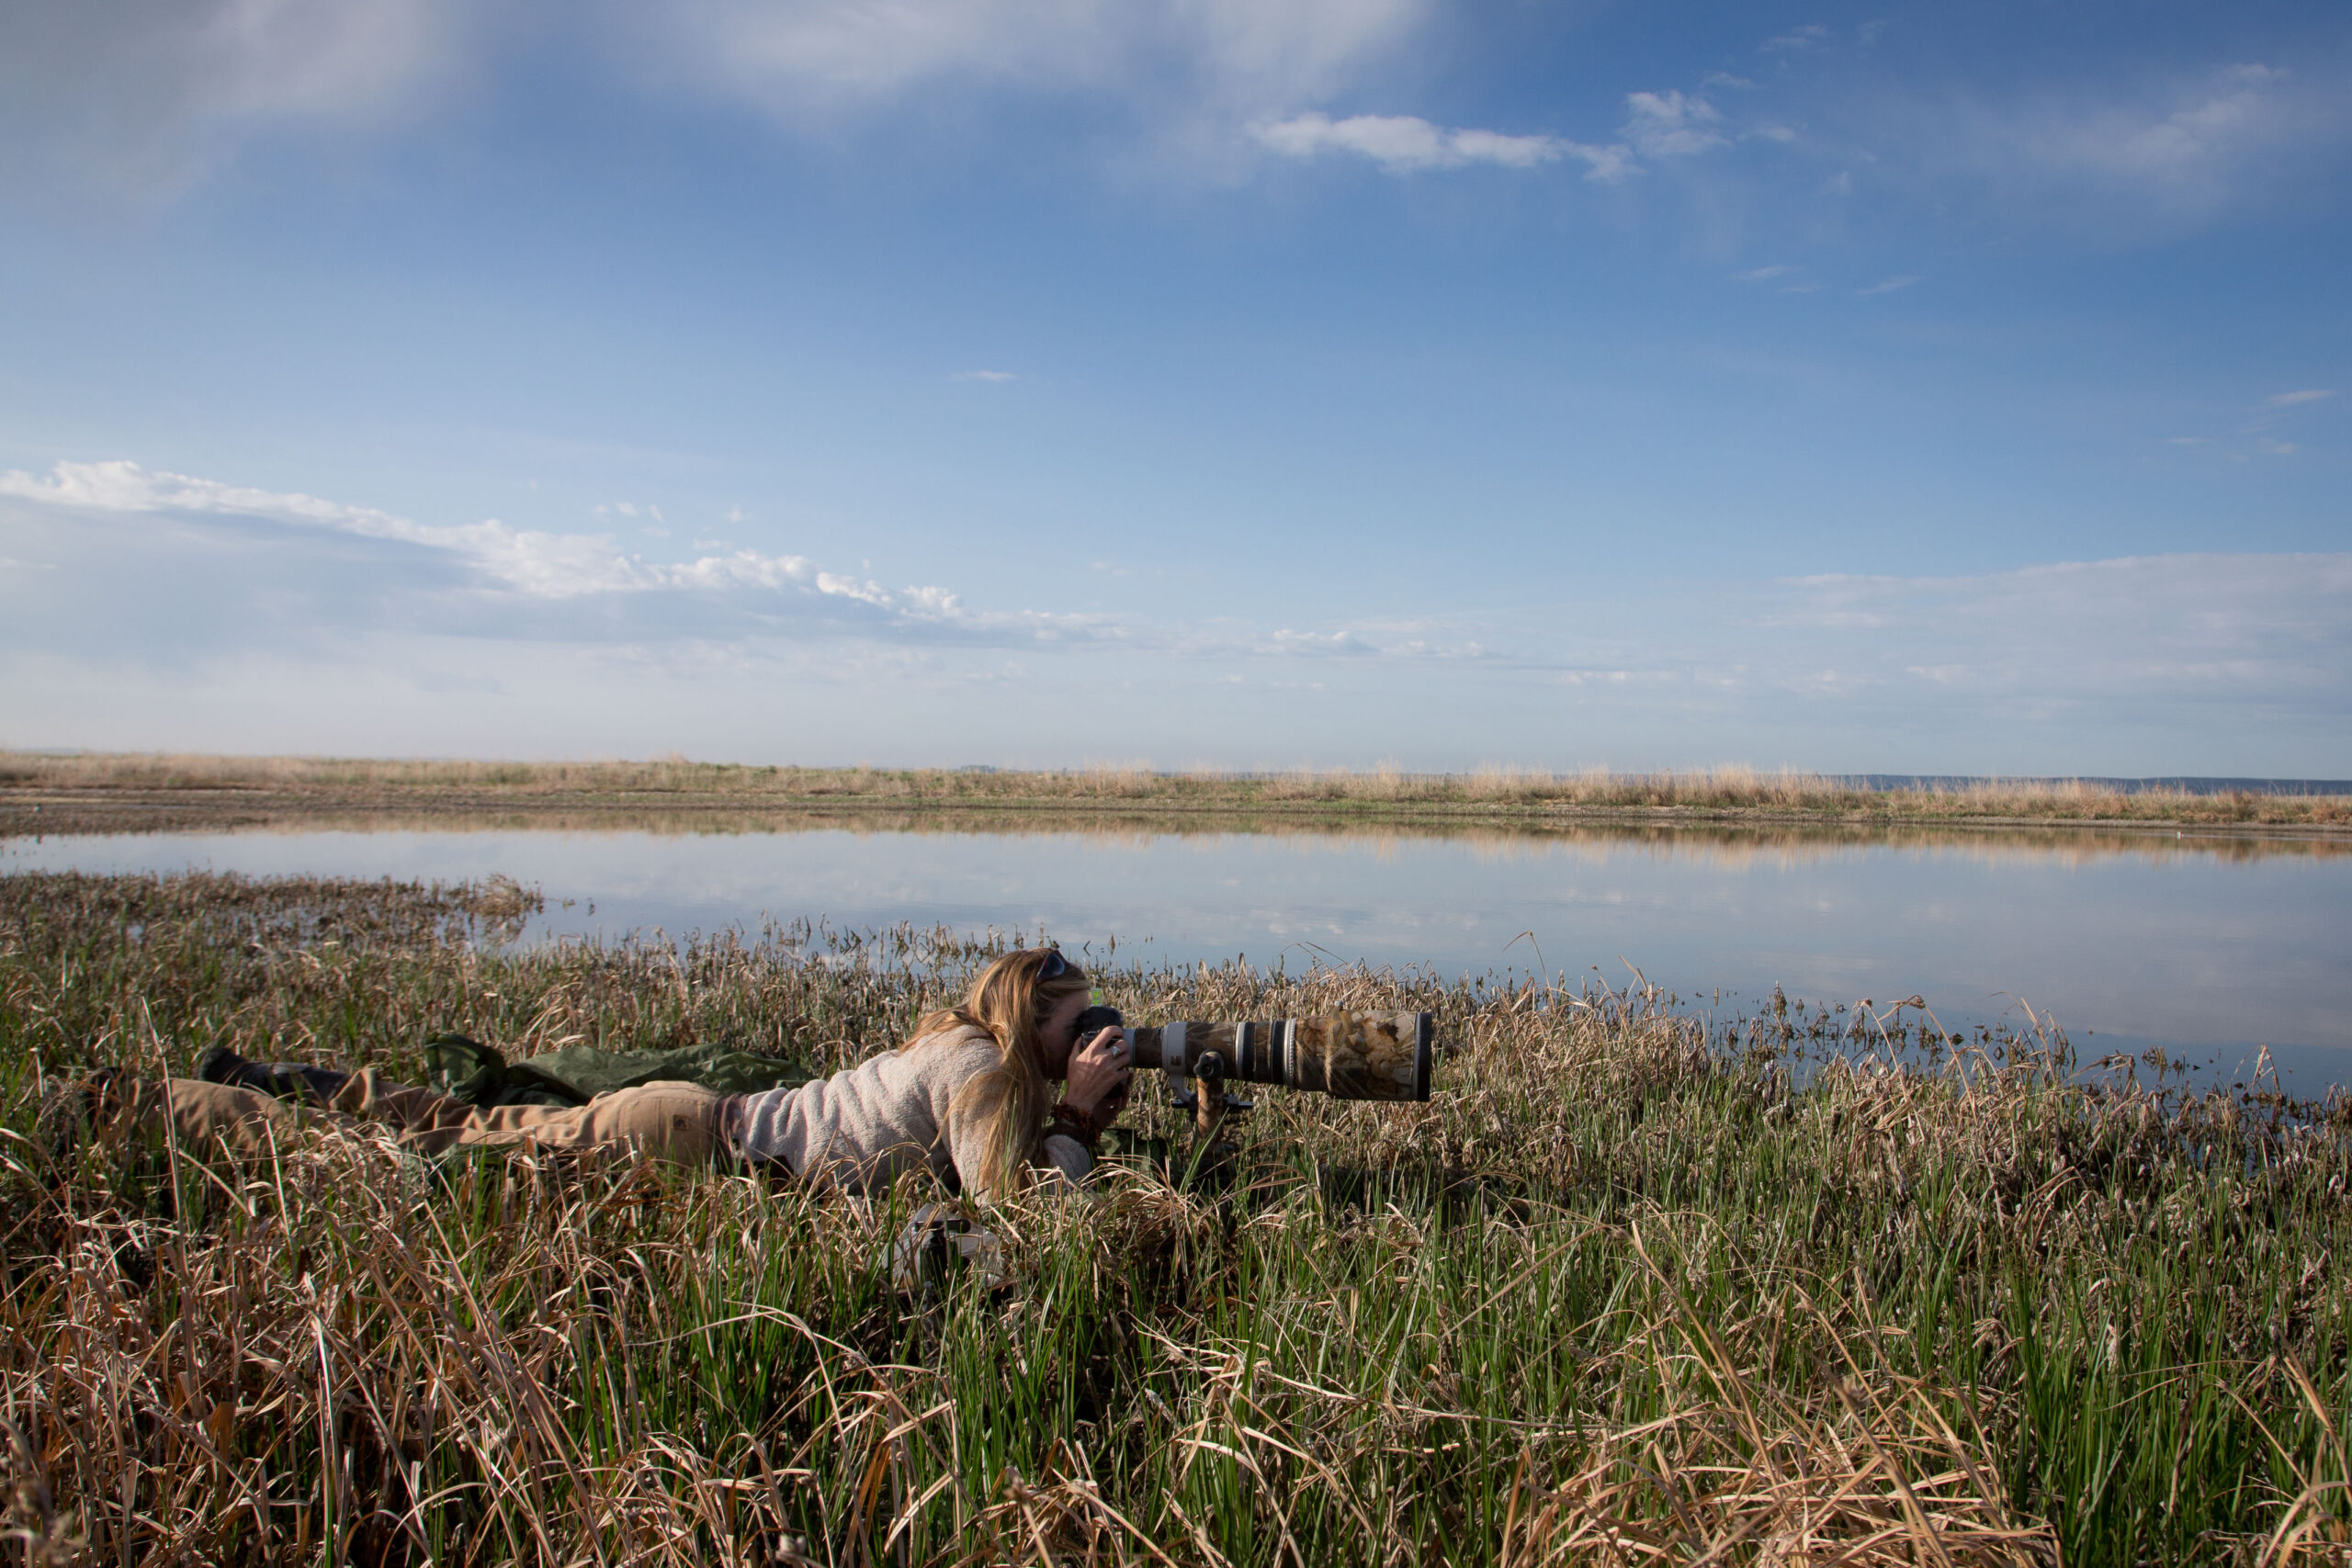 Photgrapher Melissa Groo shotting photos beside wetland